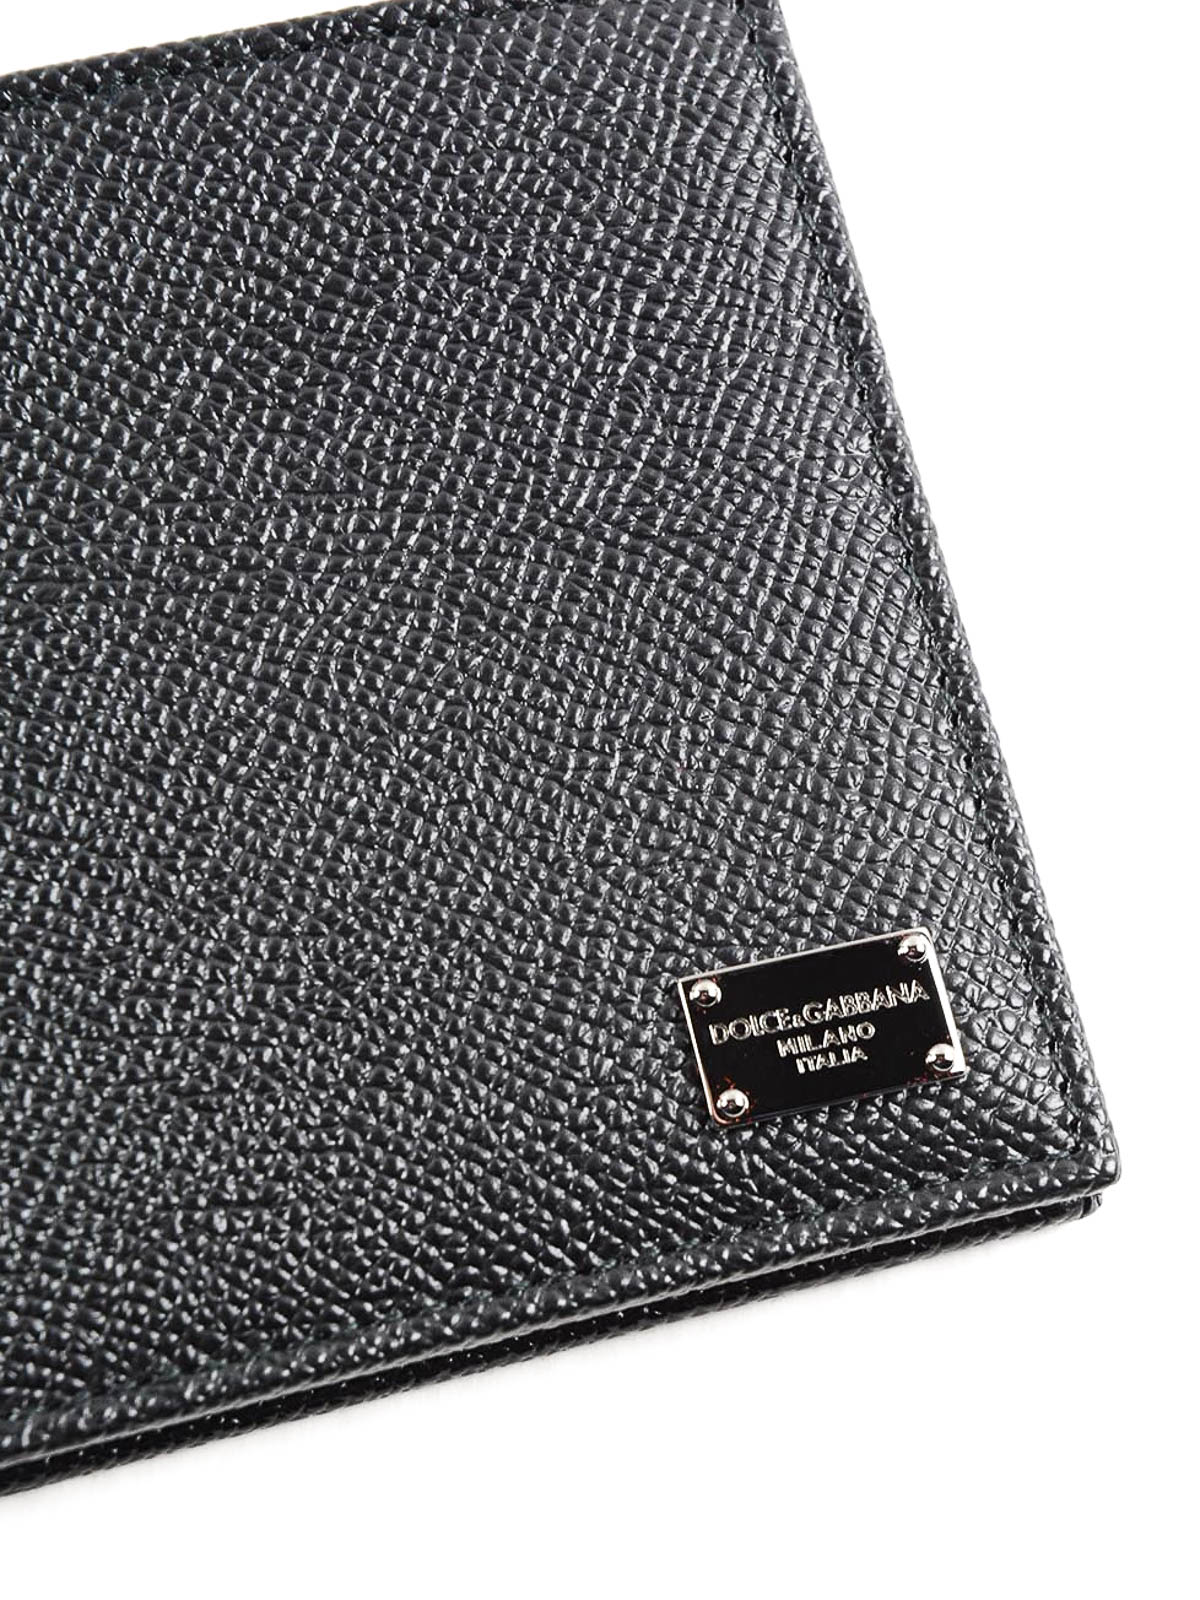 Dolce & Gabbana Leder Portemonnaie mit Reißverschluss in Schwarz für Herren Herren Accessoires Portemonnaies und Kartenetuis 